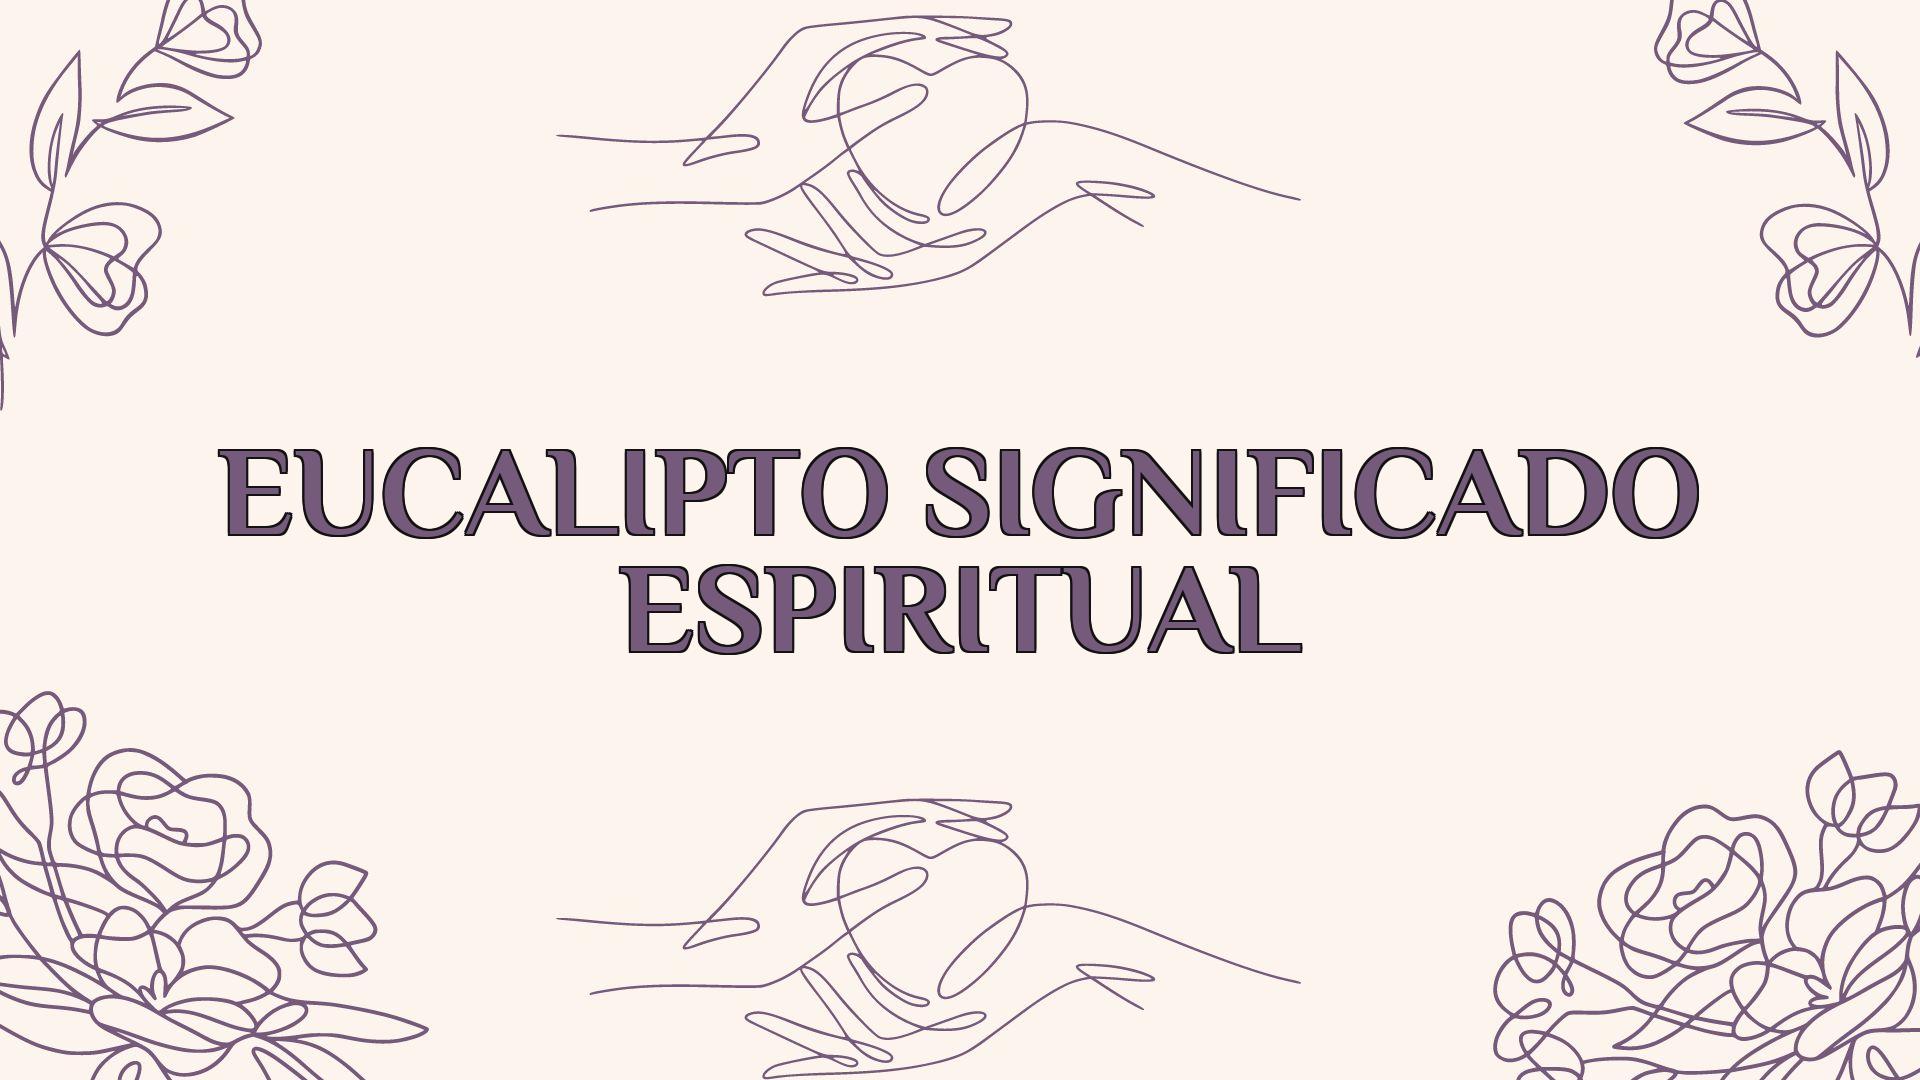 Eucalipto Significado Espiritual Ame Jumelle 1052